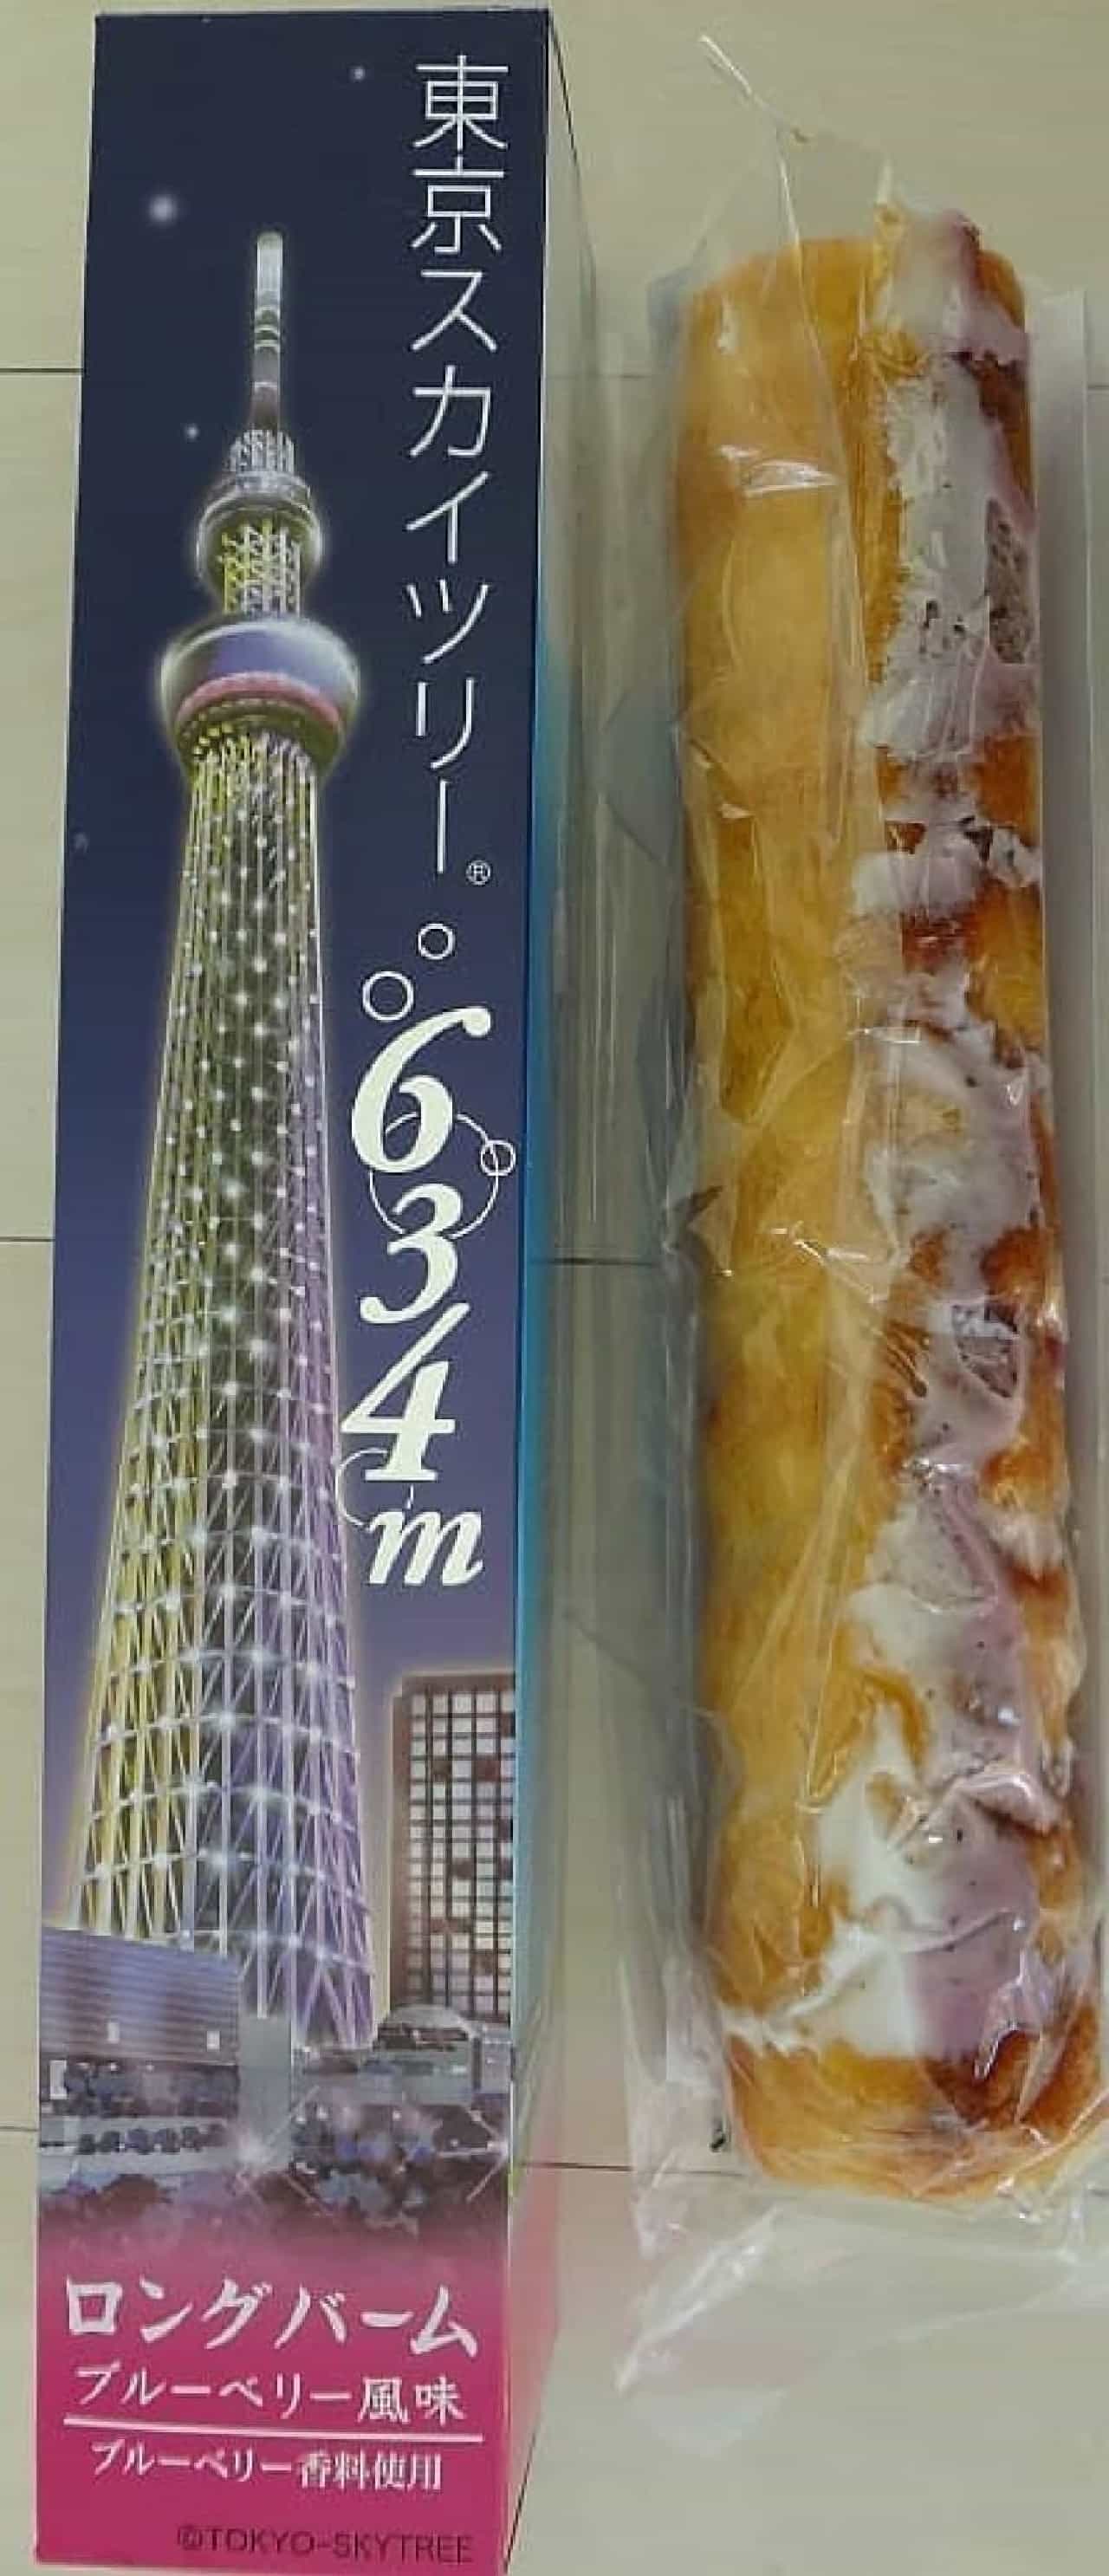 東京スカイツリーで一番人気のお土産はこれ スカイツリー並みに細長いバームクーヘン えん食べ